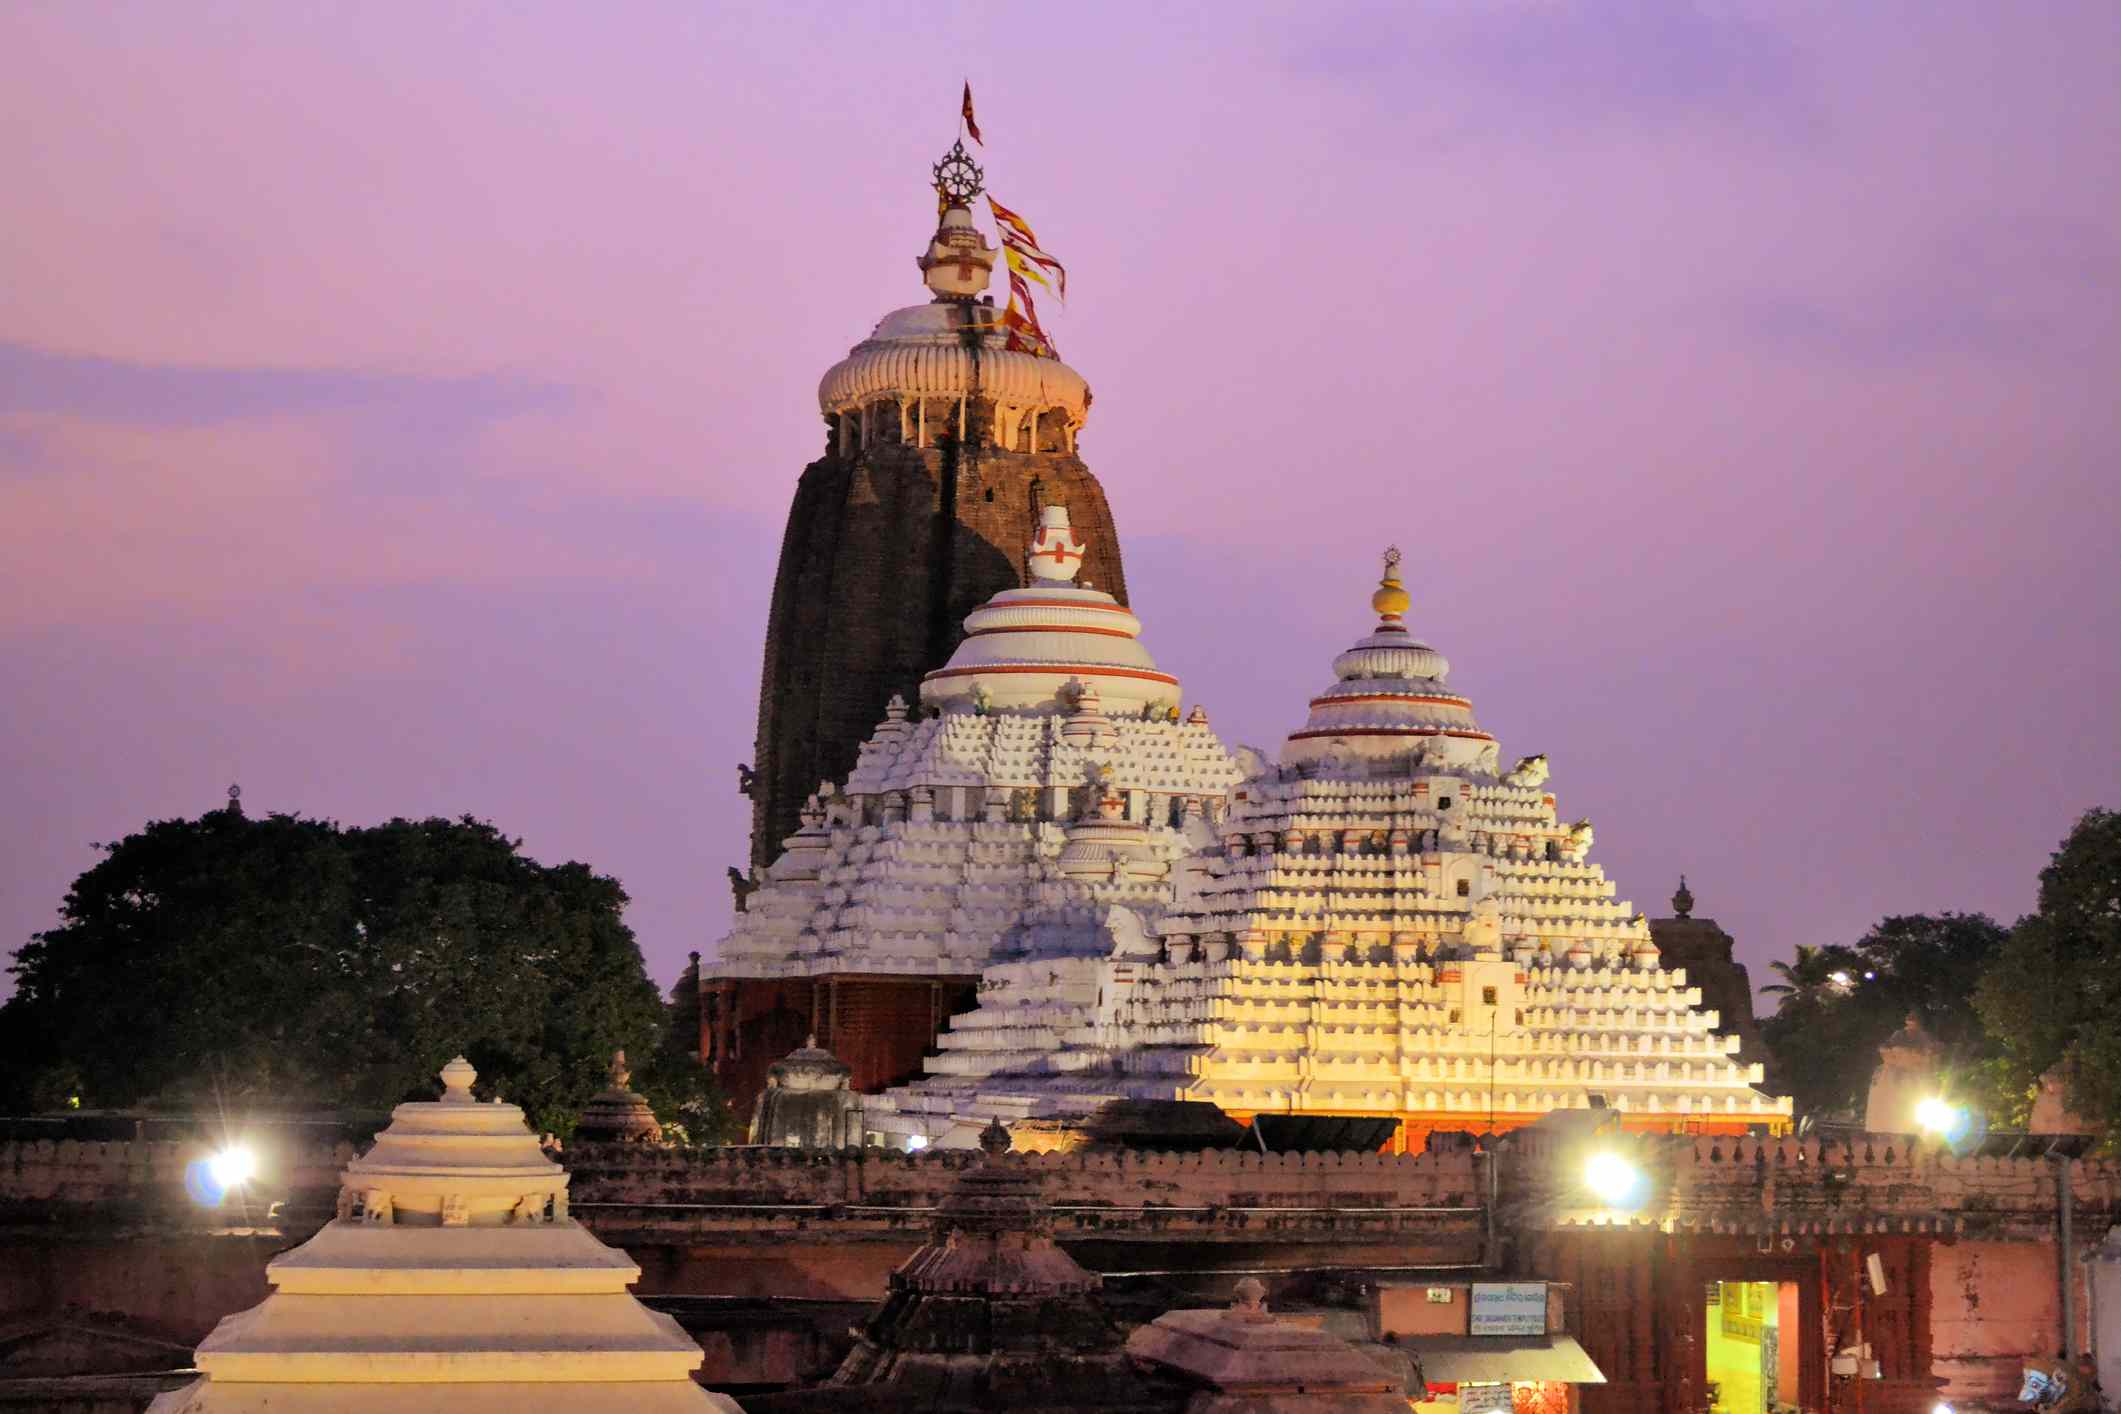 Puri, Odisha – a spiritual site in India | Wedifys